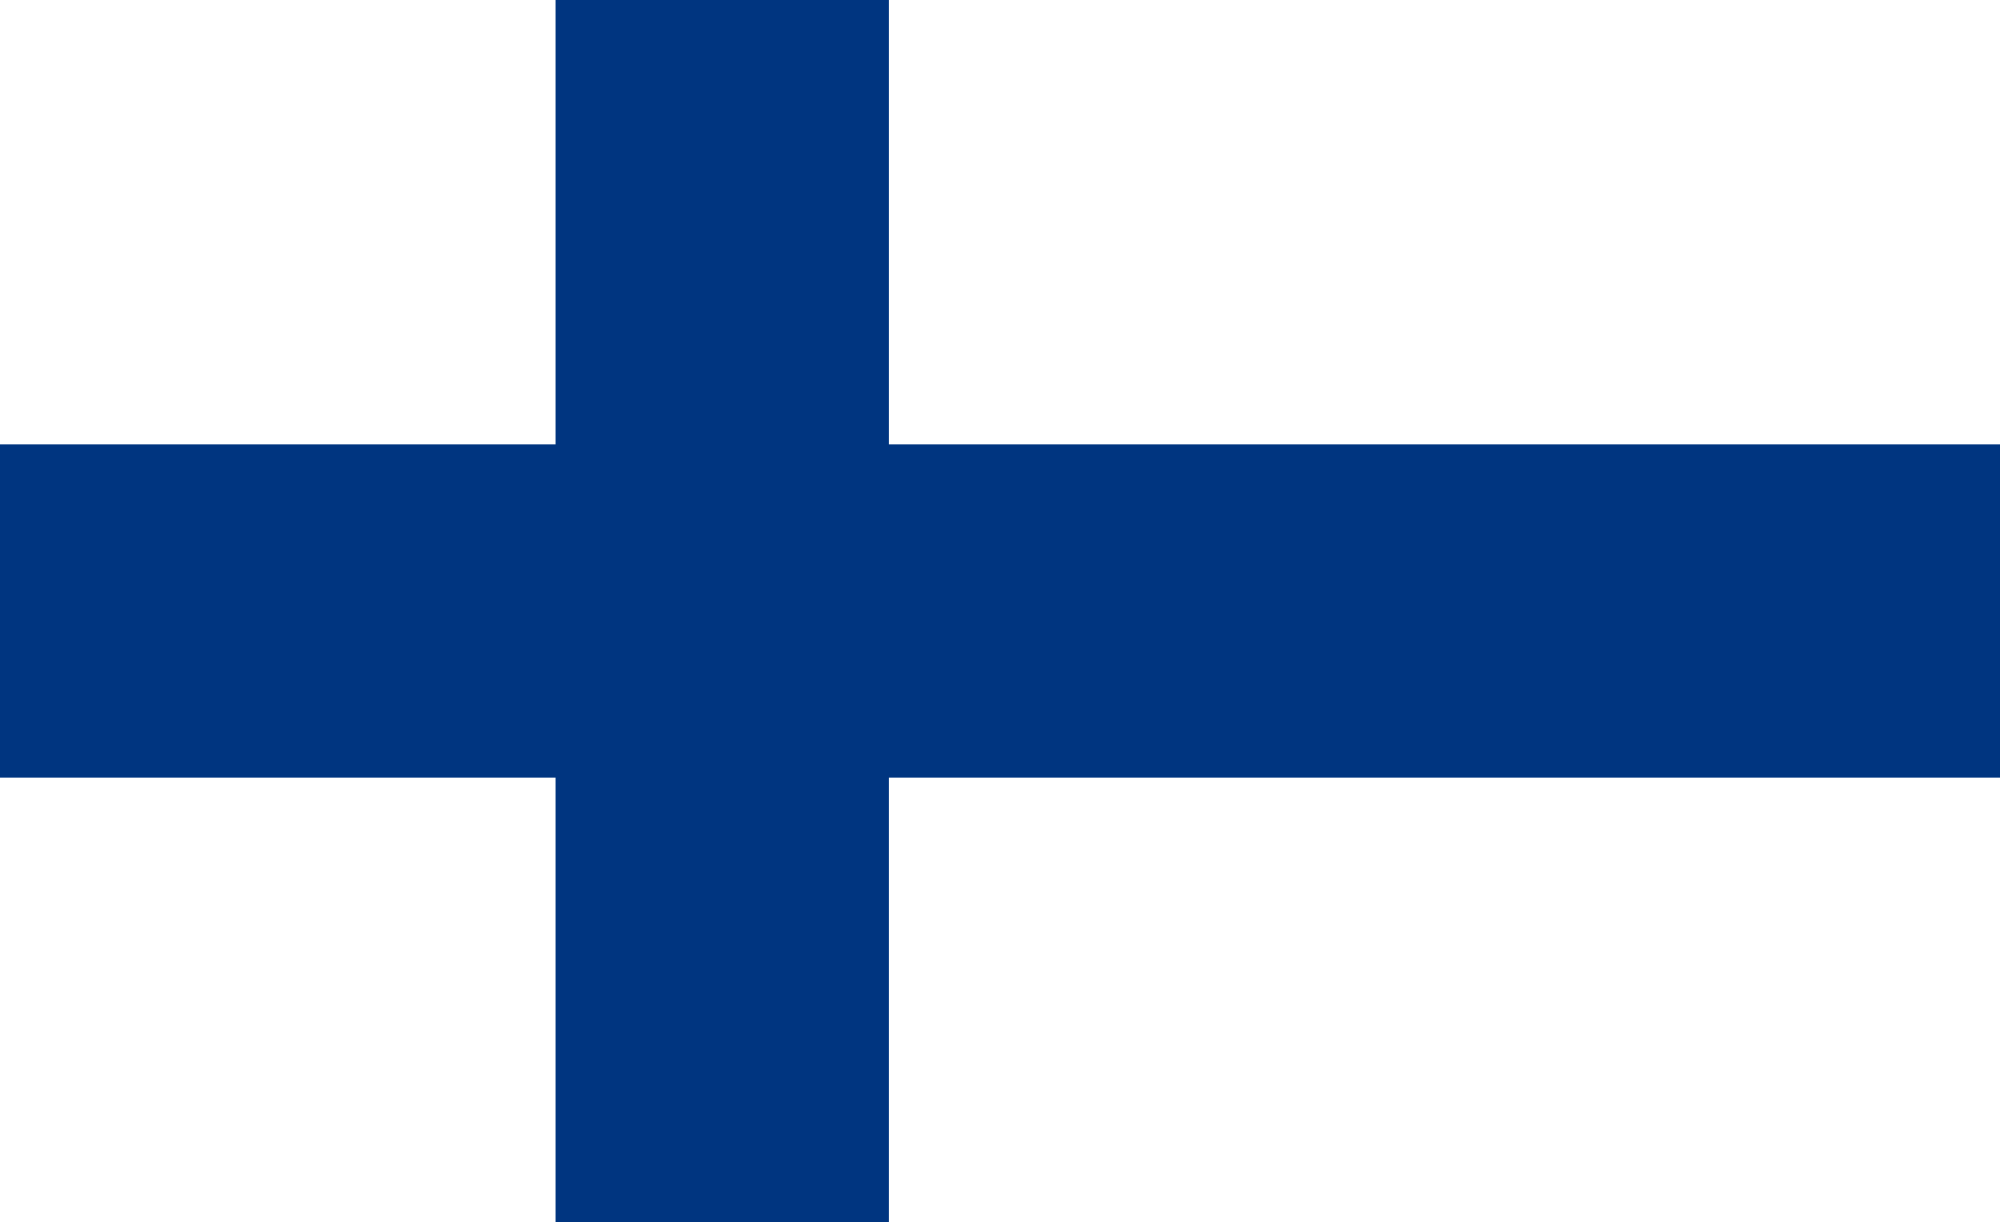 Finnish AFV